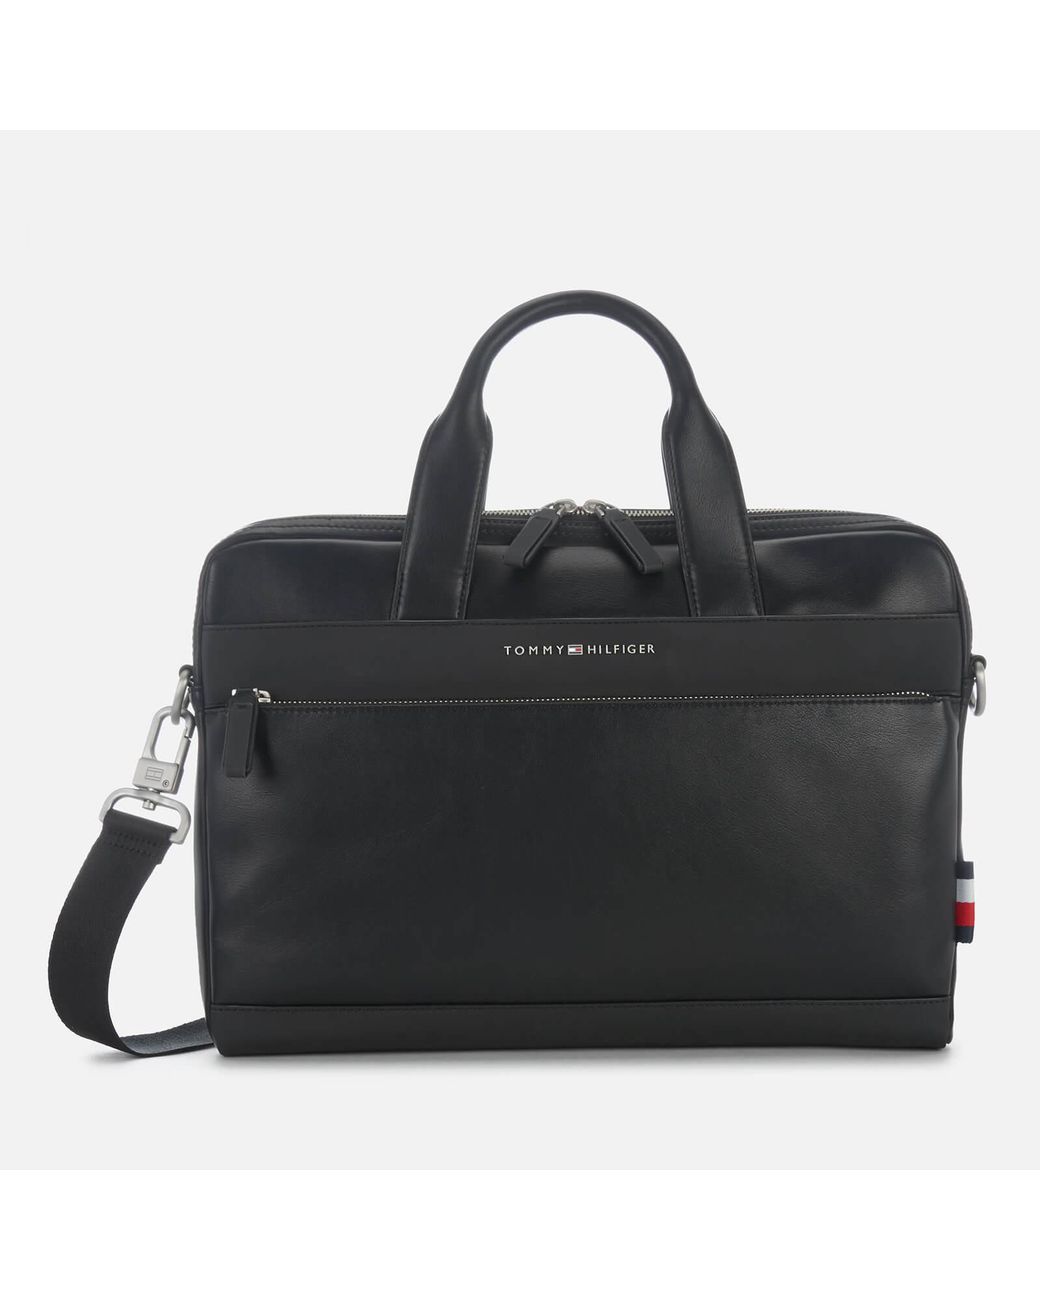 Tommy Hilfiger Th City Slim Laptop Bag in Black for Men | Lyst Australia